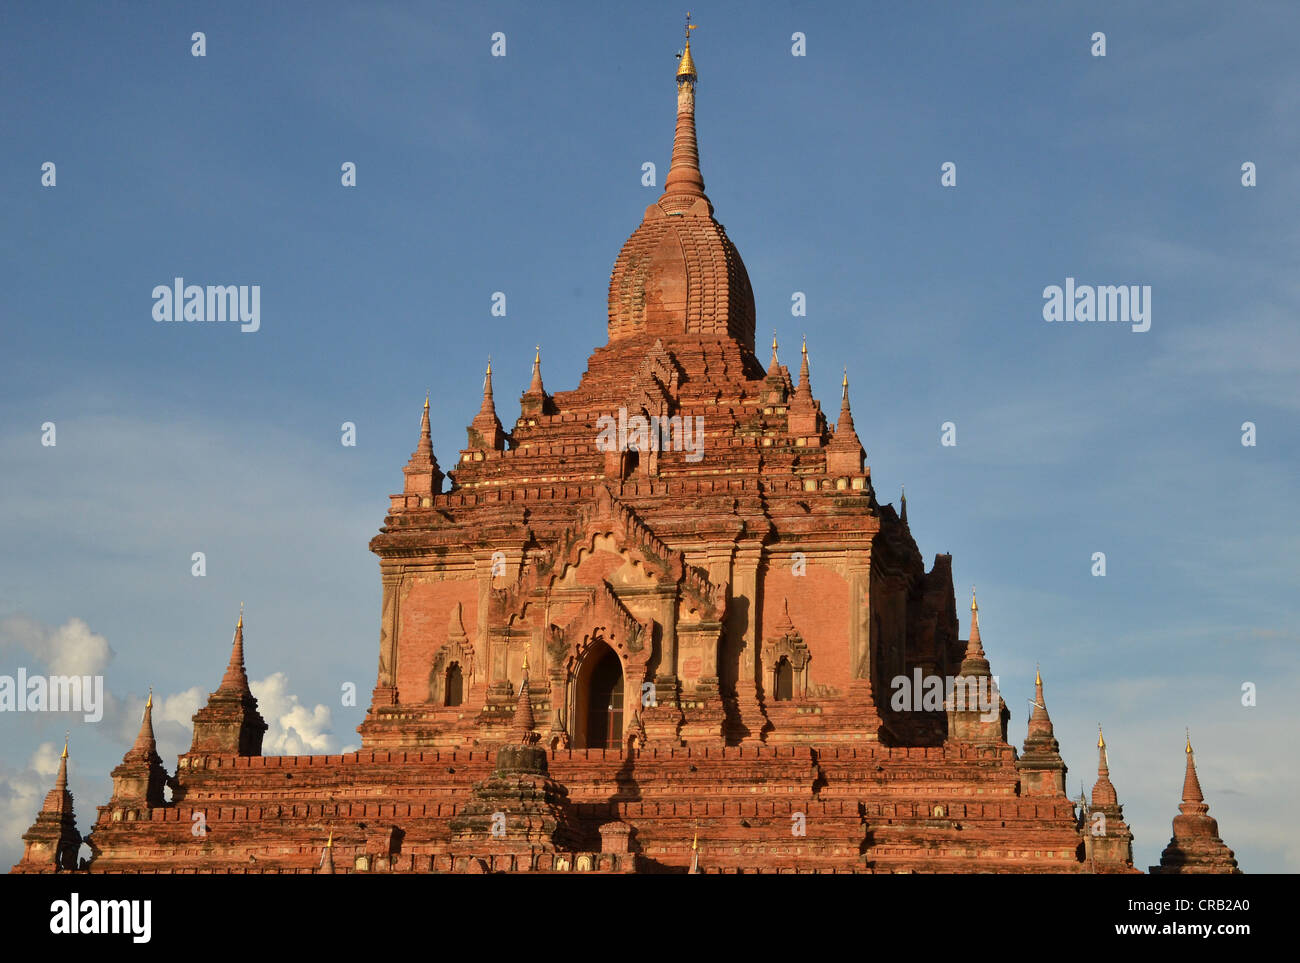 Tempio Htilominlo, del XIII secolo, uno degli ultimi grandi templi costruiti a Bagan prima della caduta del regno, Old Bagan, pagane Foto Stock